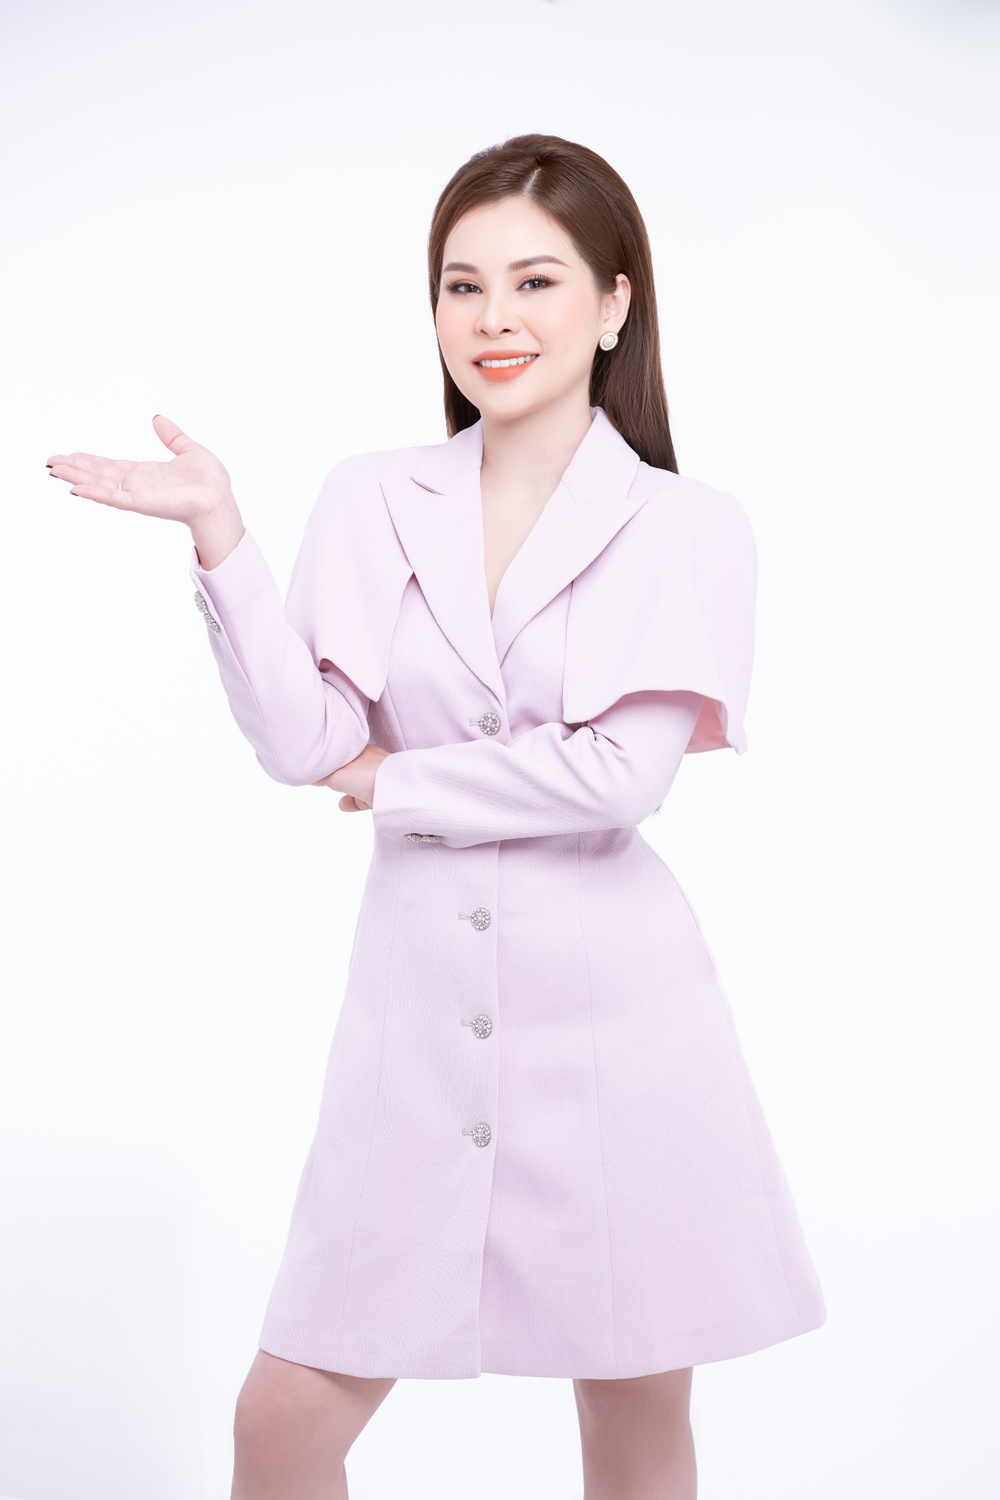 CEO Hoàng Quí là một người phụ nữ thành đạt và xinh đẹp